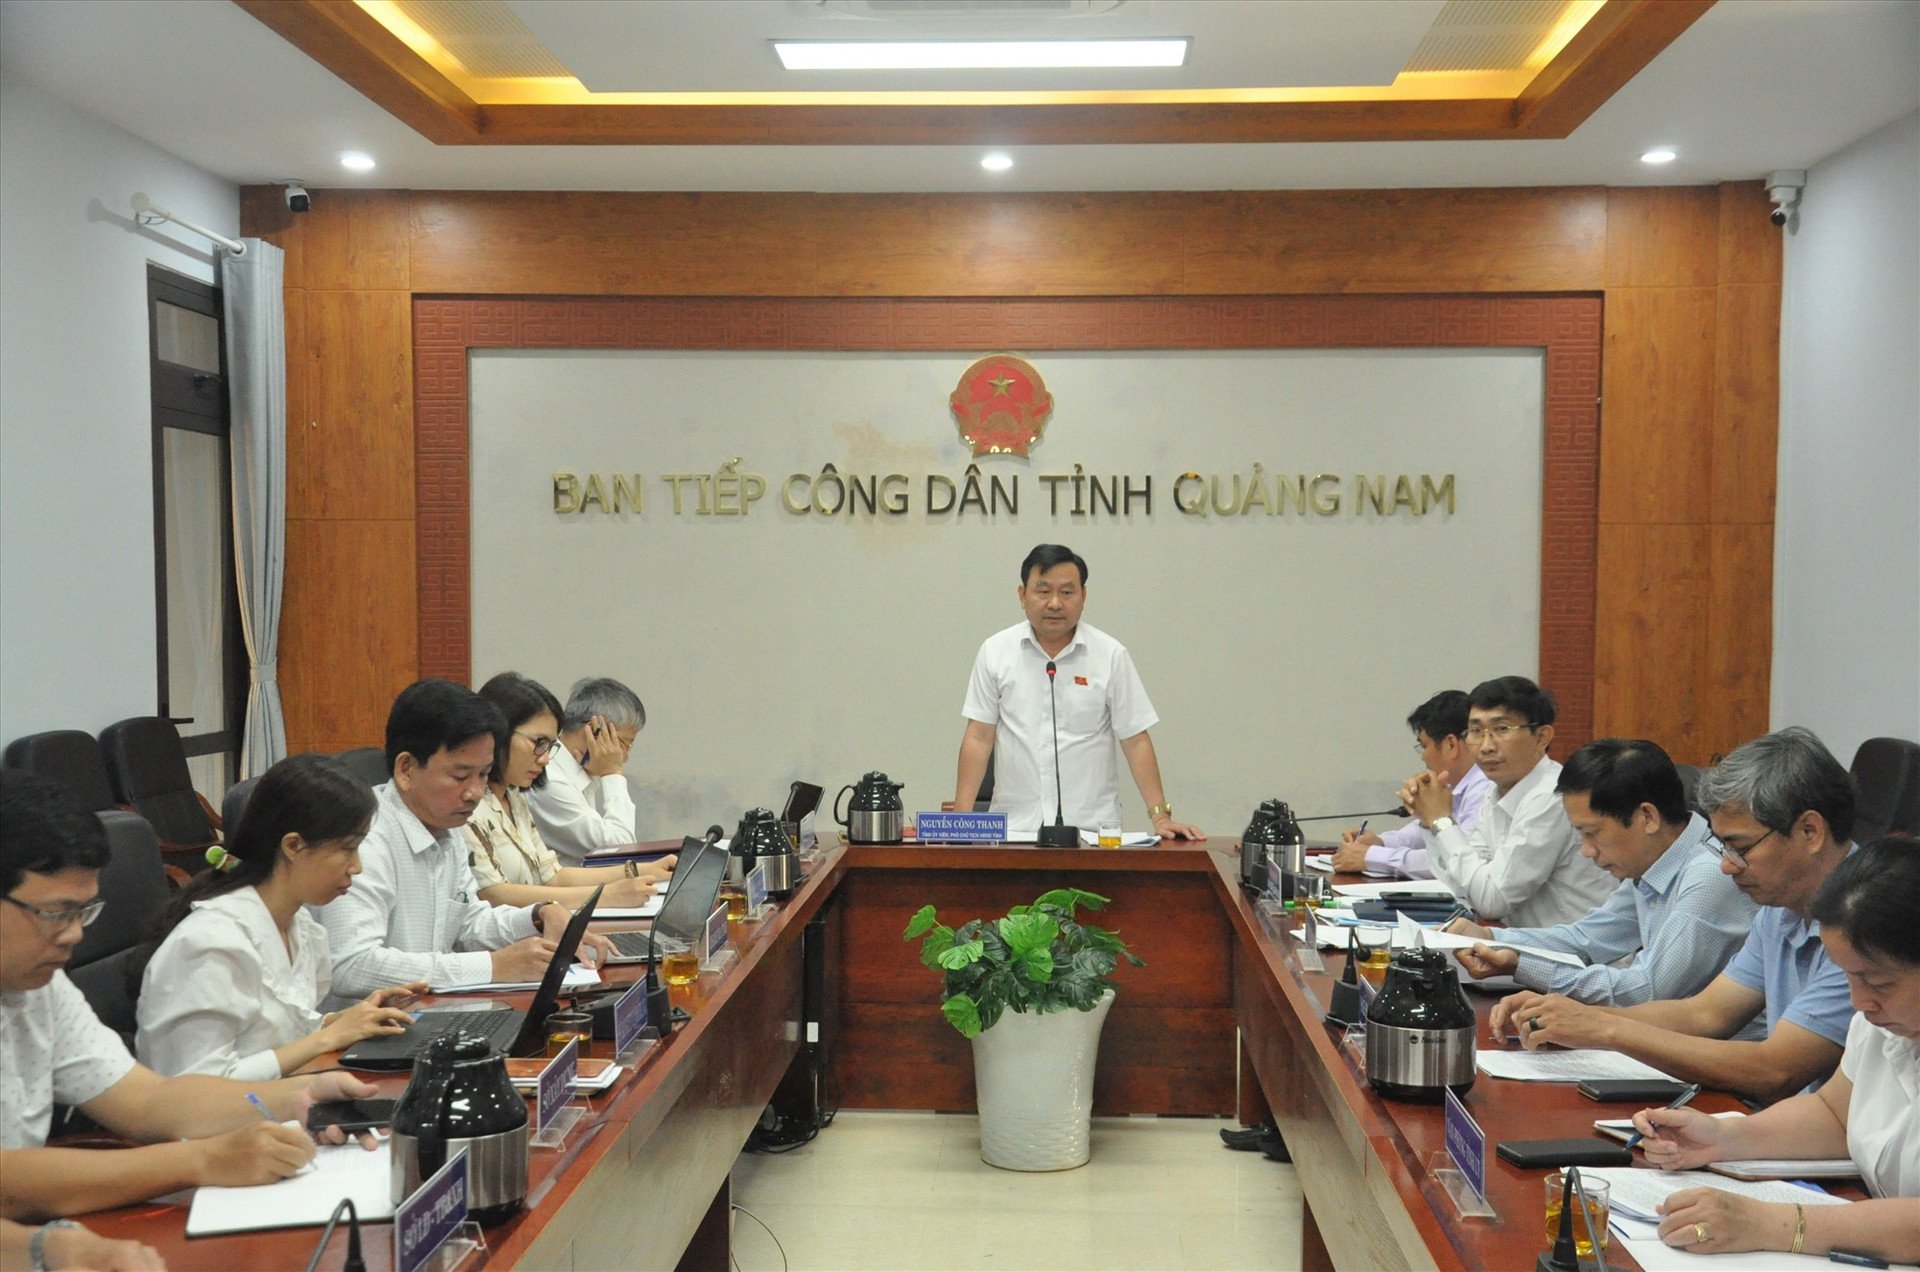 Phó Chủ tịch HĐND tỉnh Nguyễn Công Thanh chủ tri tiếp công dân. Ảnh: X.P